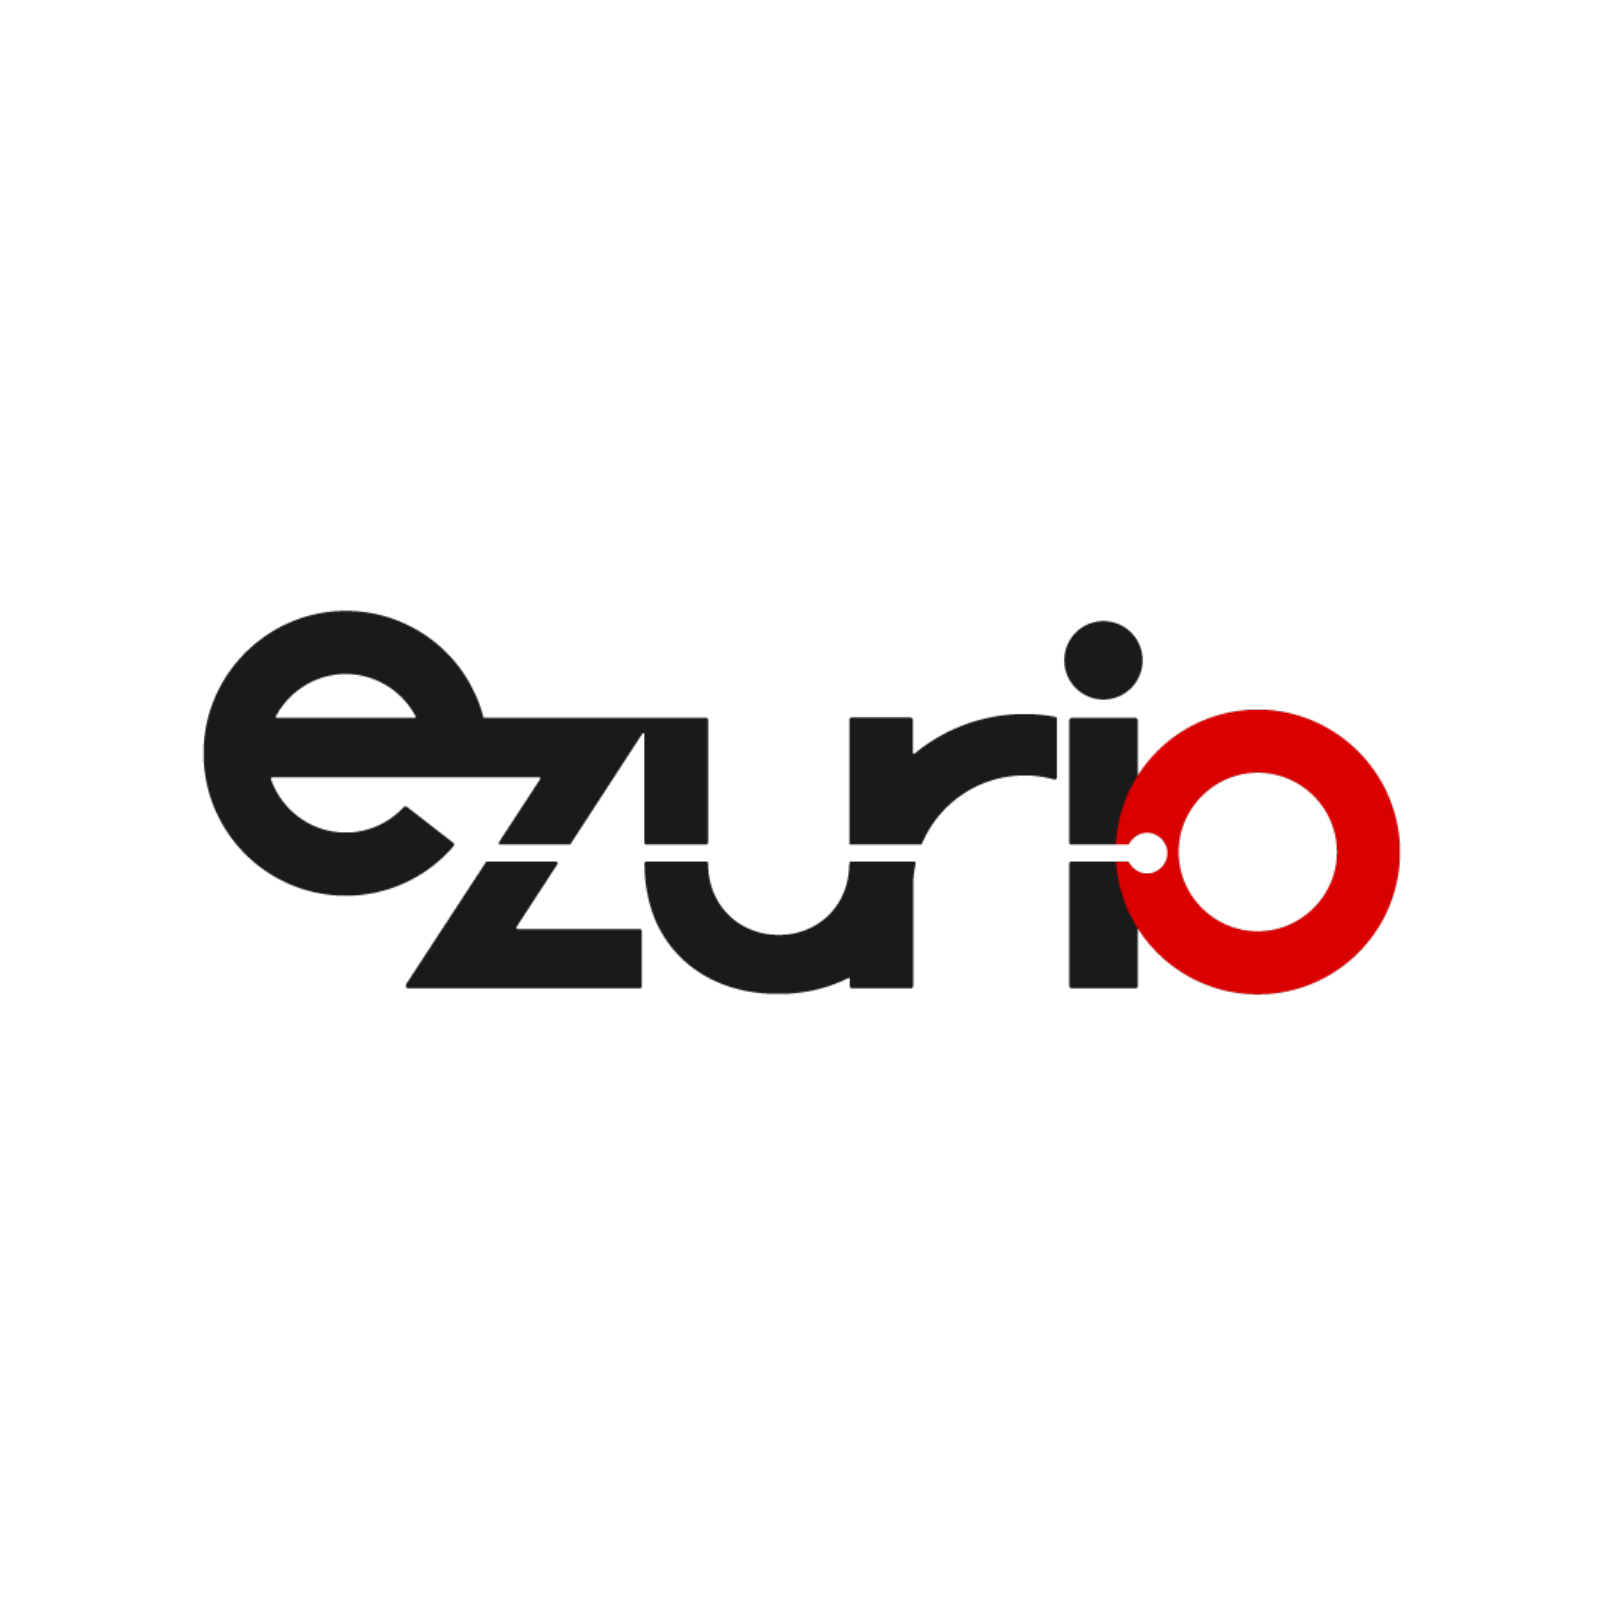 Ezurio